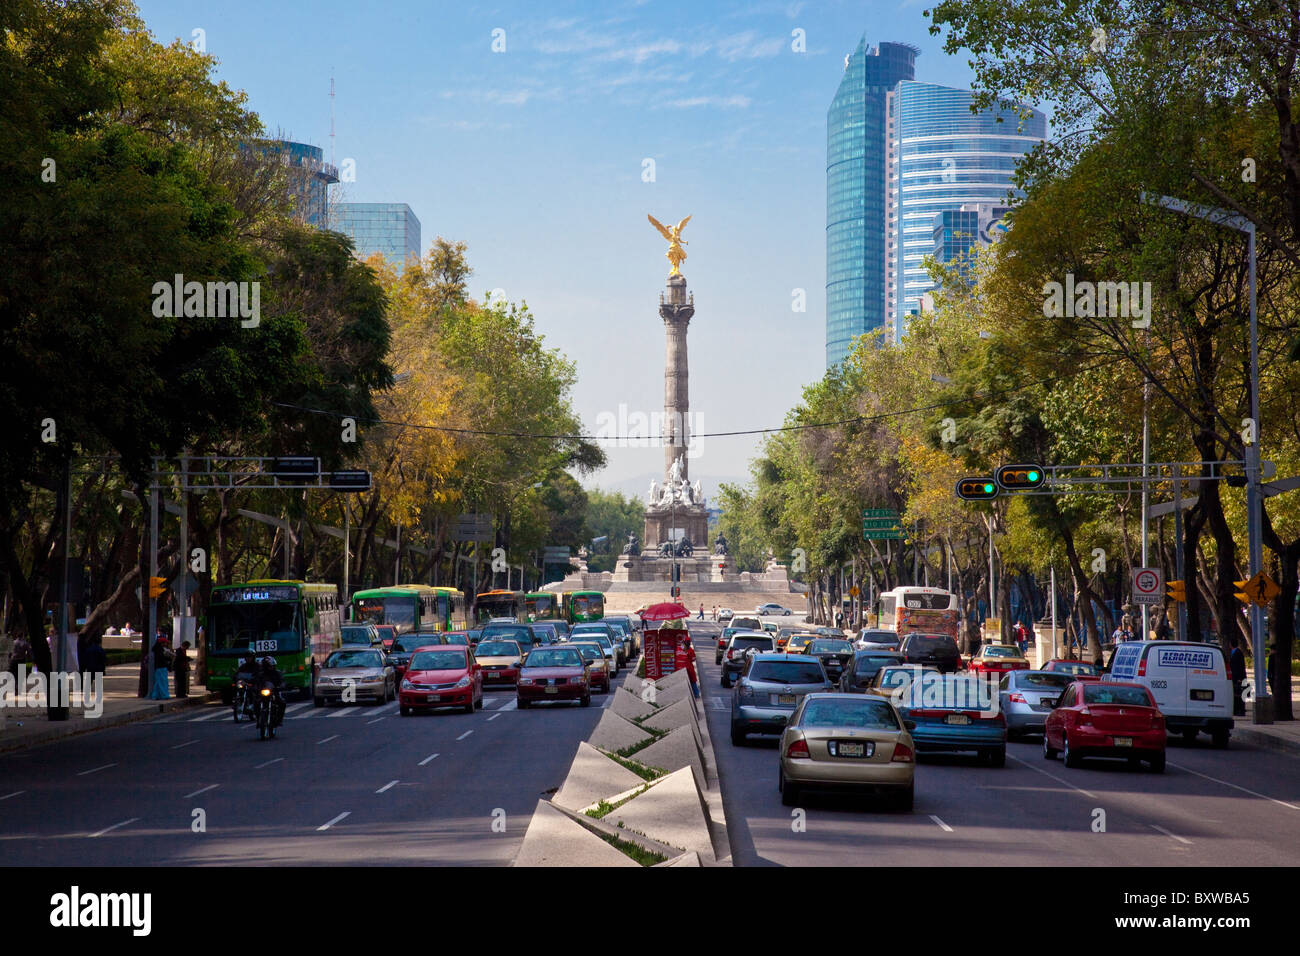 Angel de la Independencia on Paseo de la Reforma in Mexico City, Mexico Stock Photo